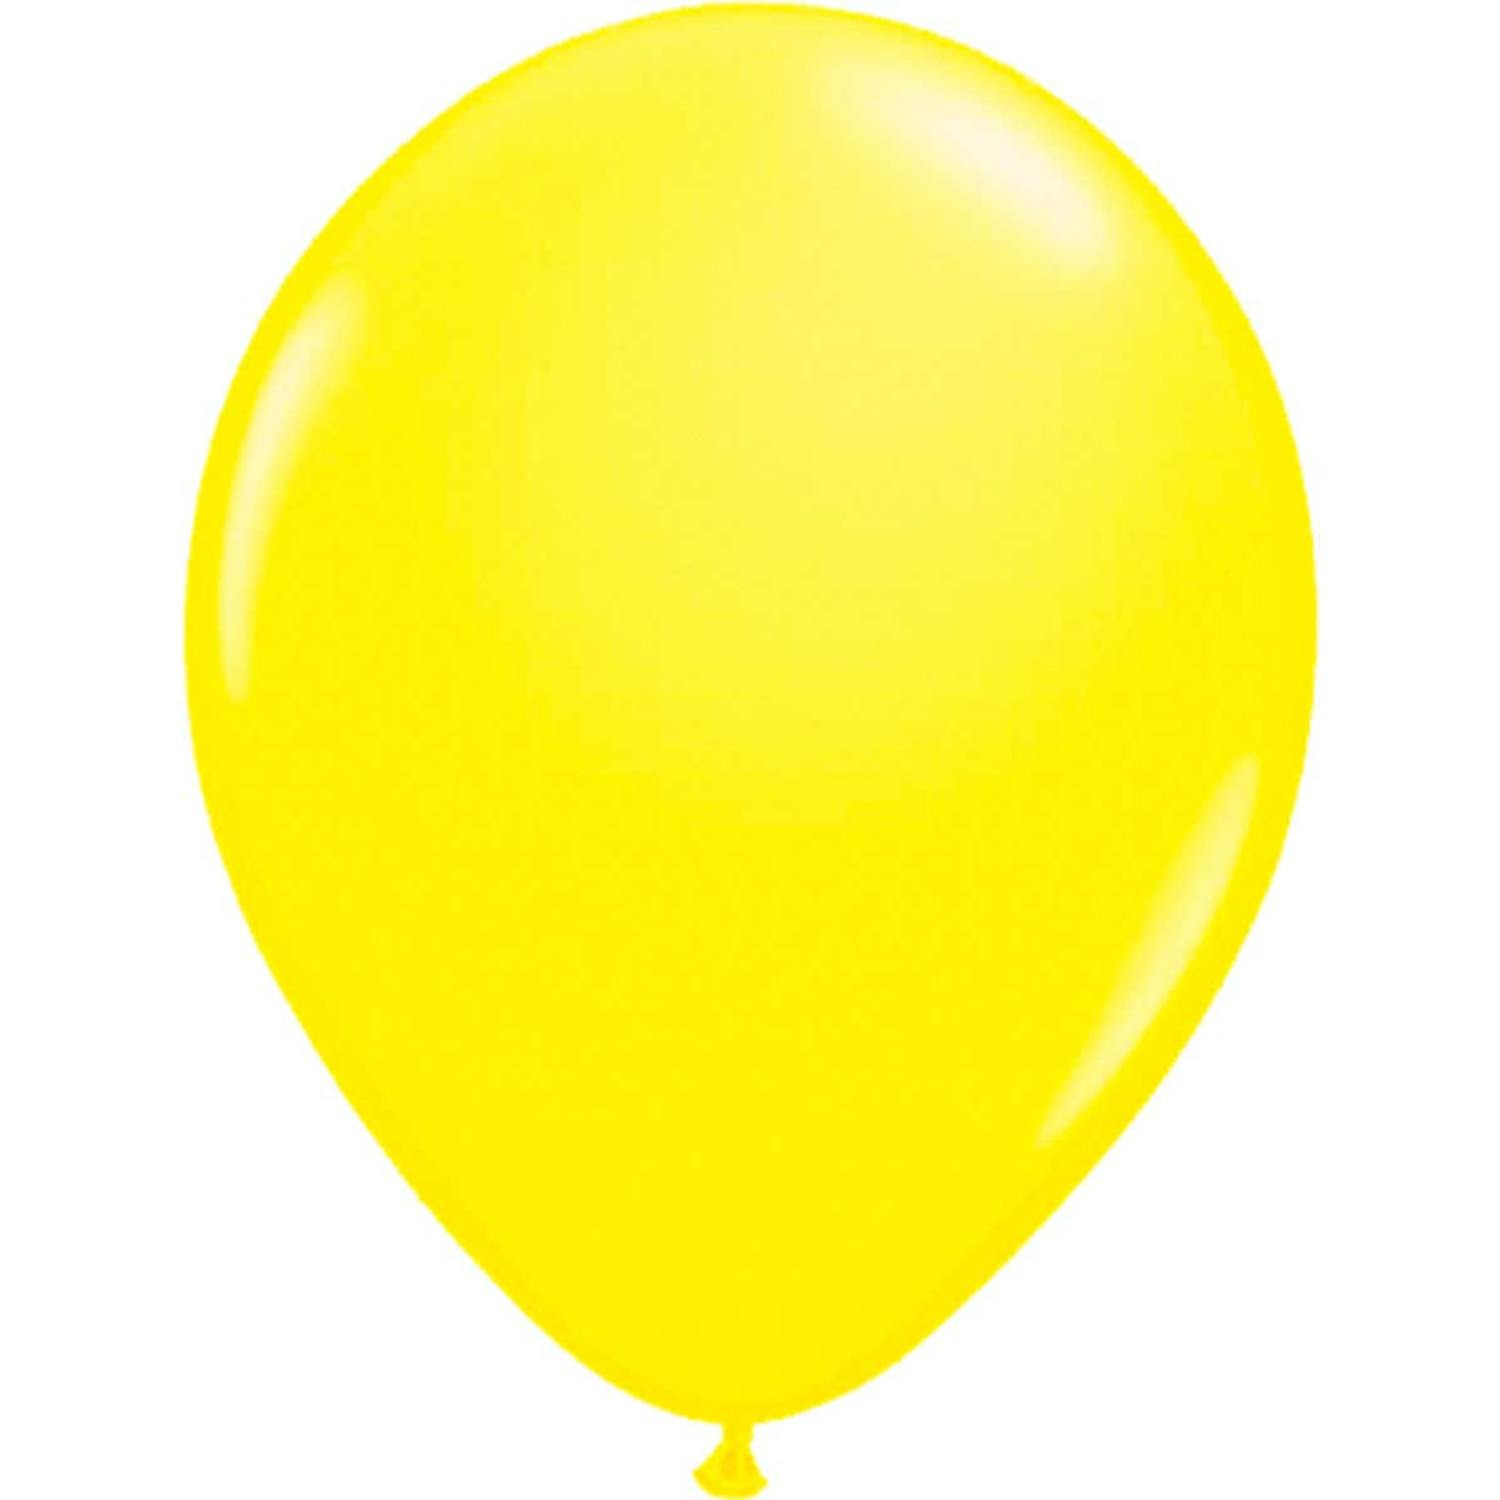 8x stuks Neon fel gele latex ballonnen 25 cm